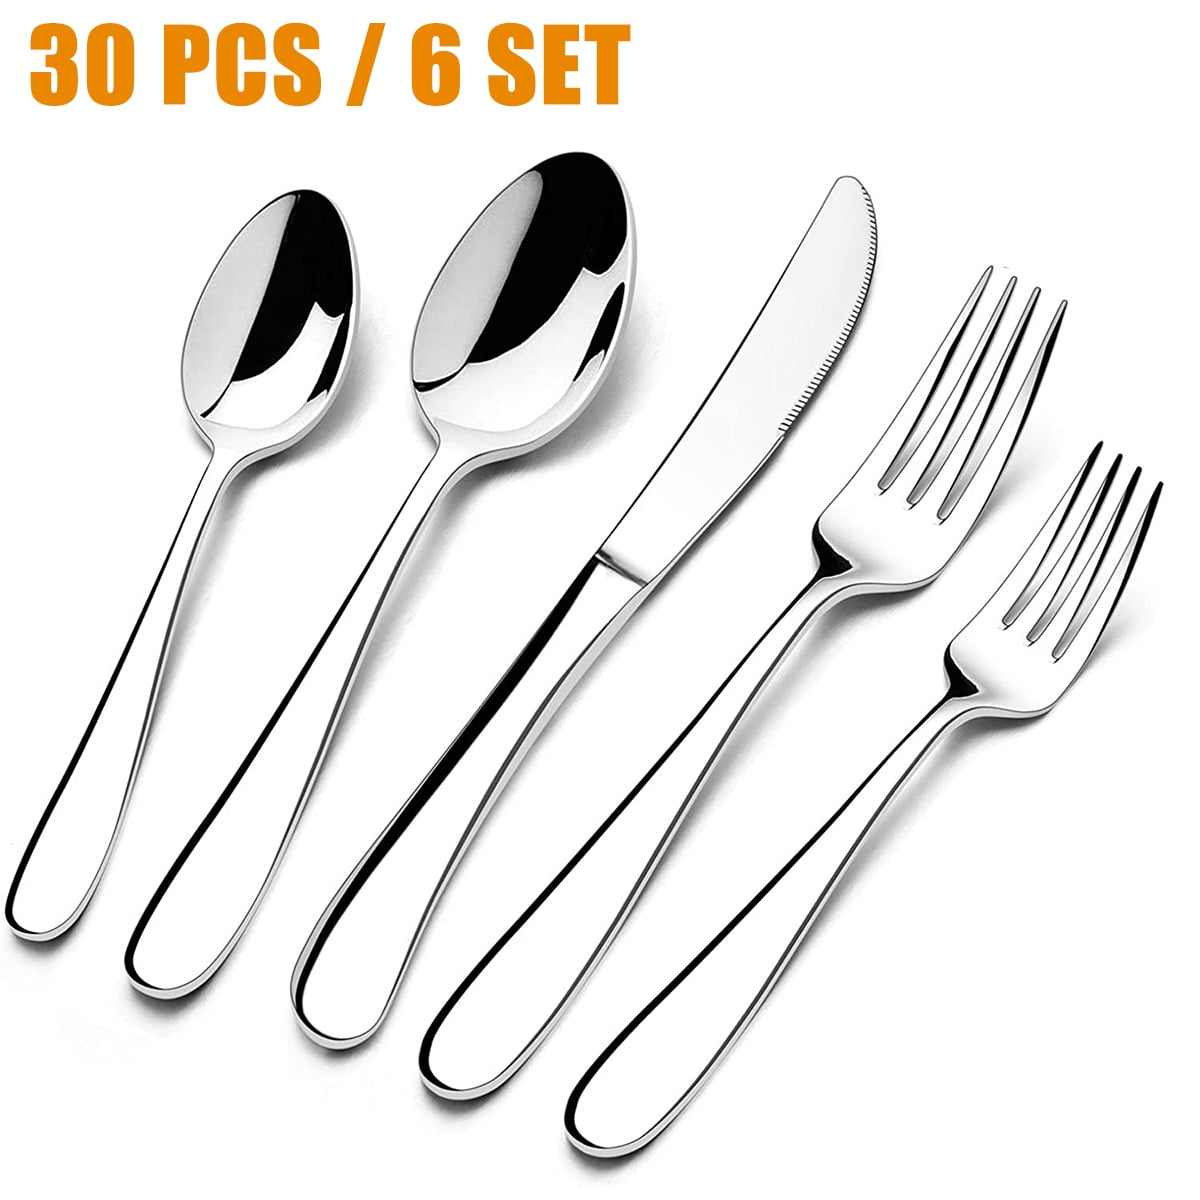 Mainstays Kids Flatware Set 6 Forks/6 Spoons Variety Of Colors Dishwasher Safe 